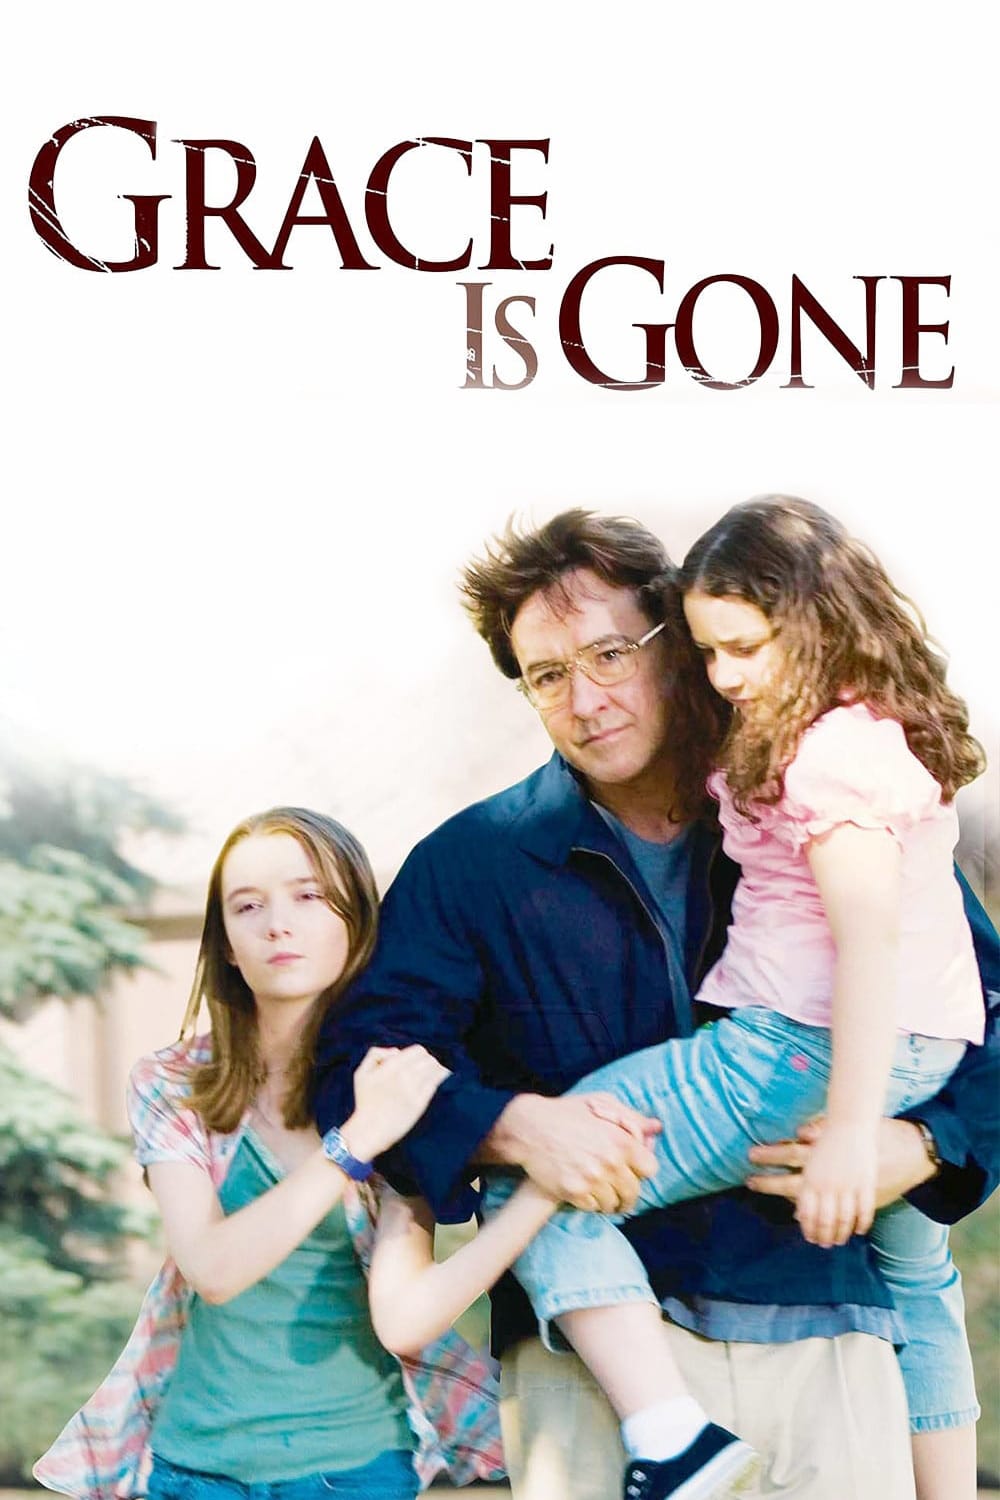 Grace is gone (2008)